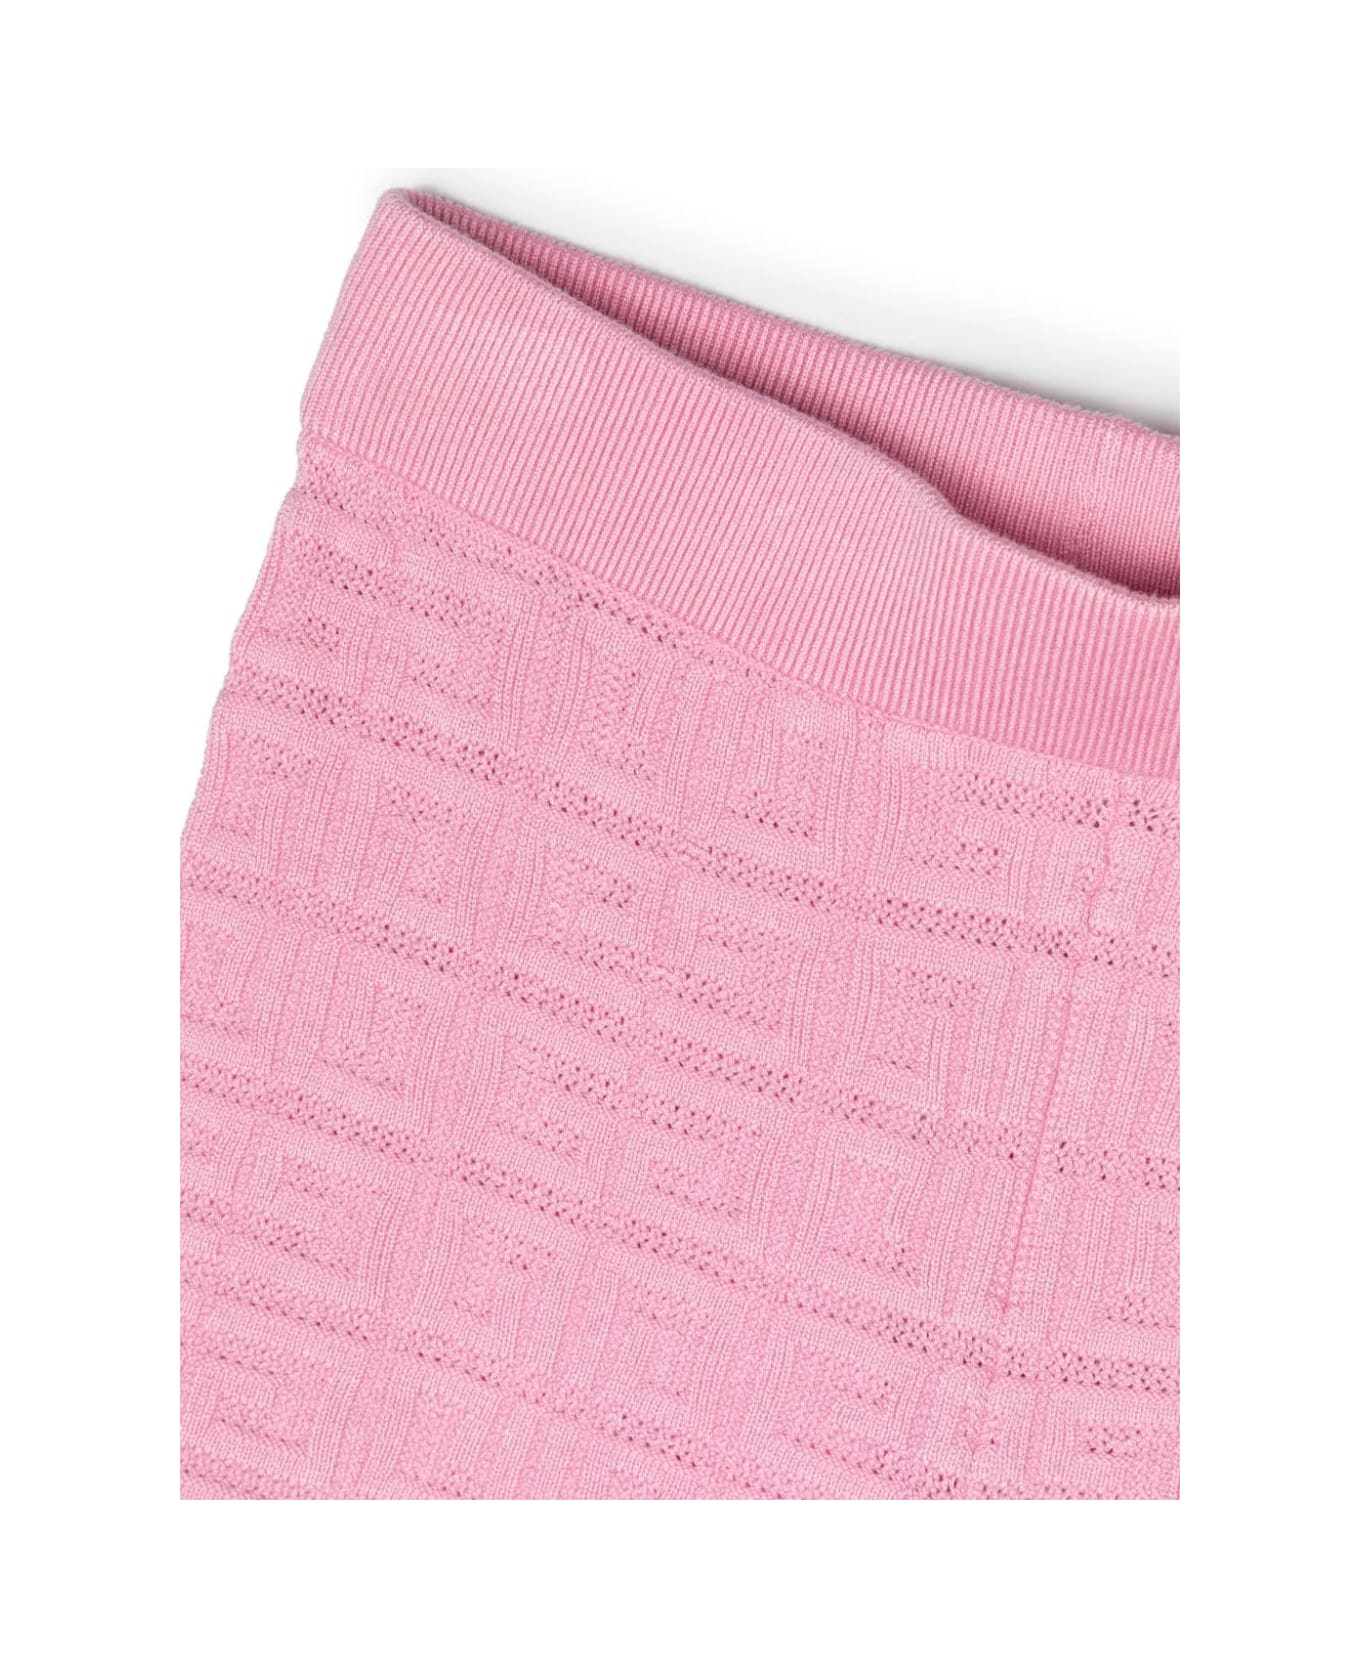 Givenchy Shorts With Jacquard Motif - Pink ボトムス